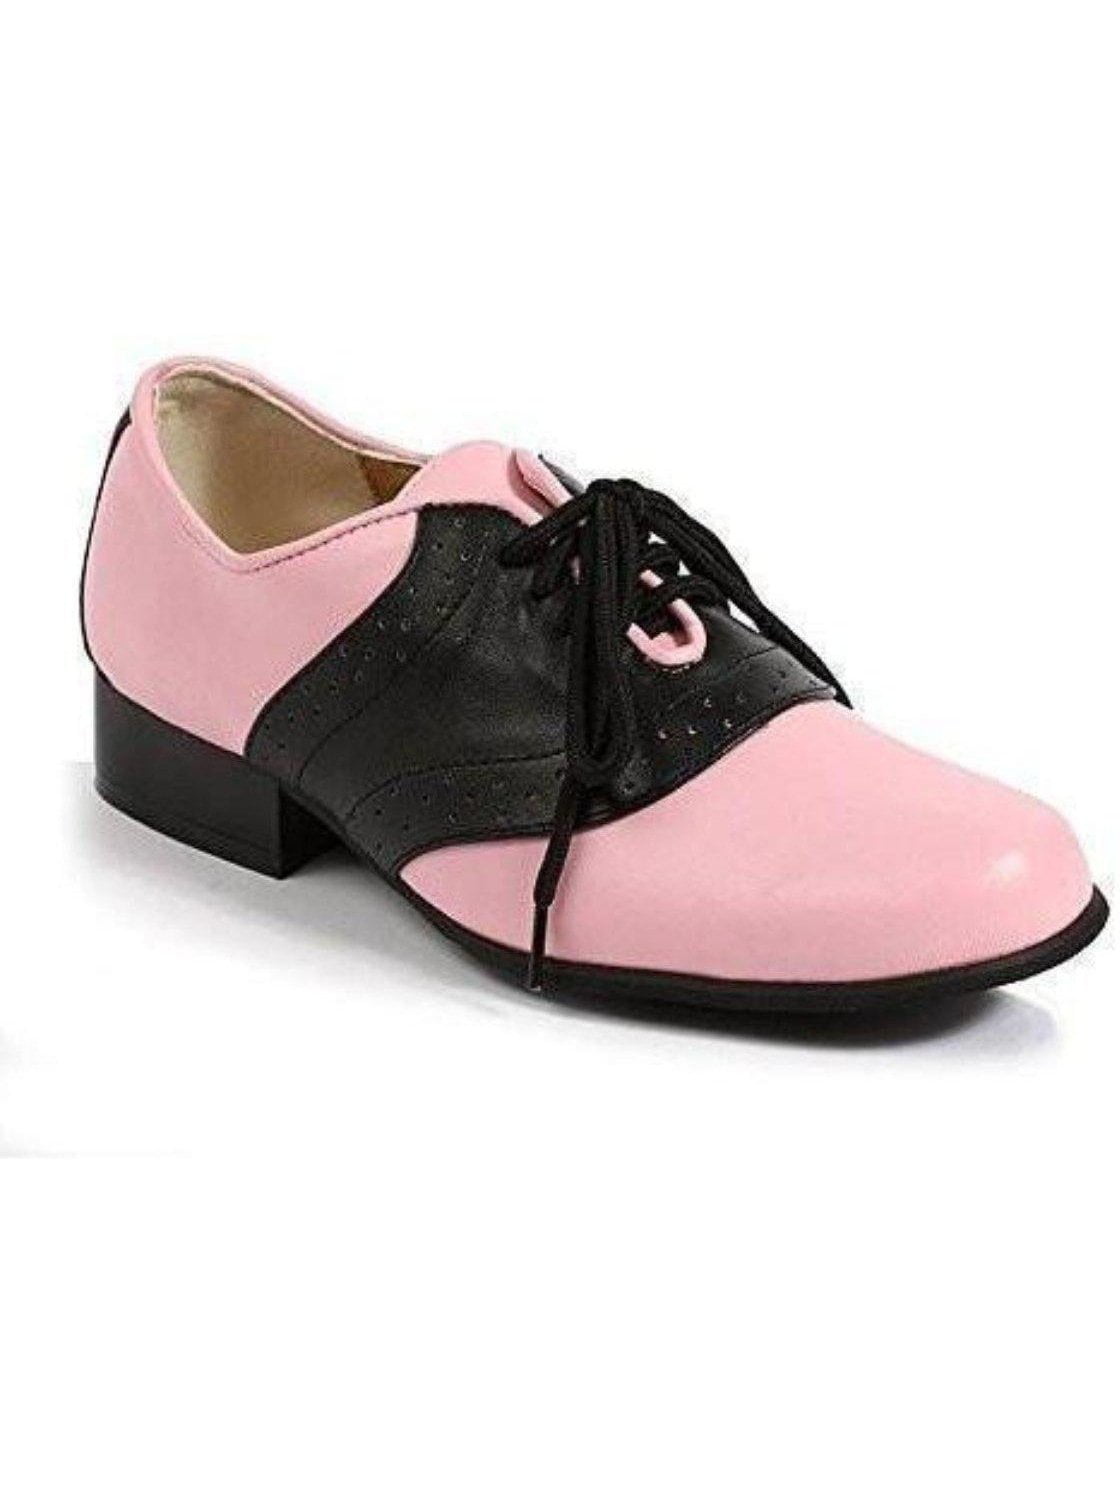 pink saddle shoes